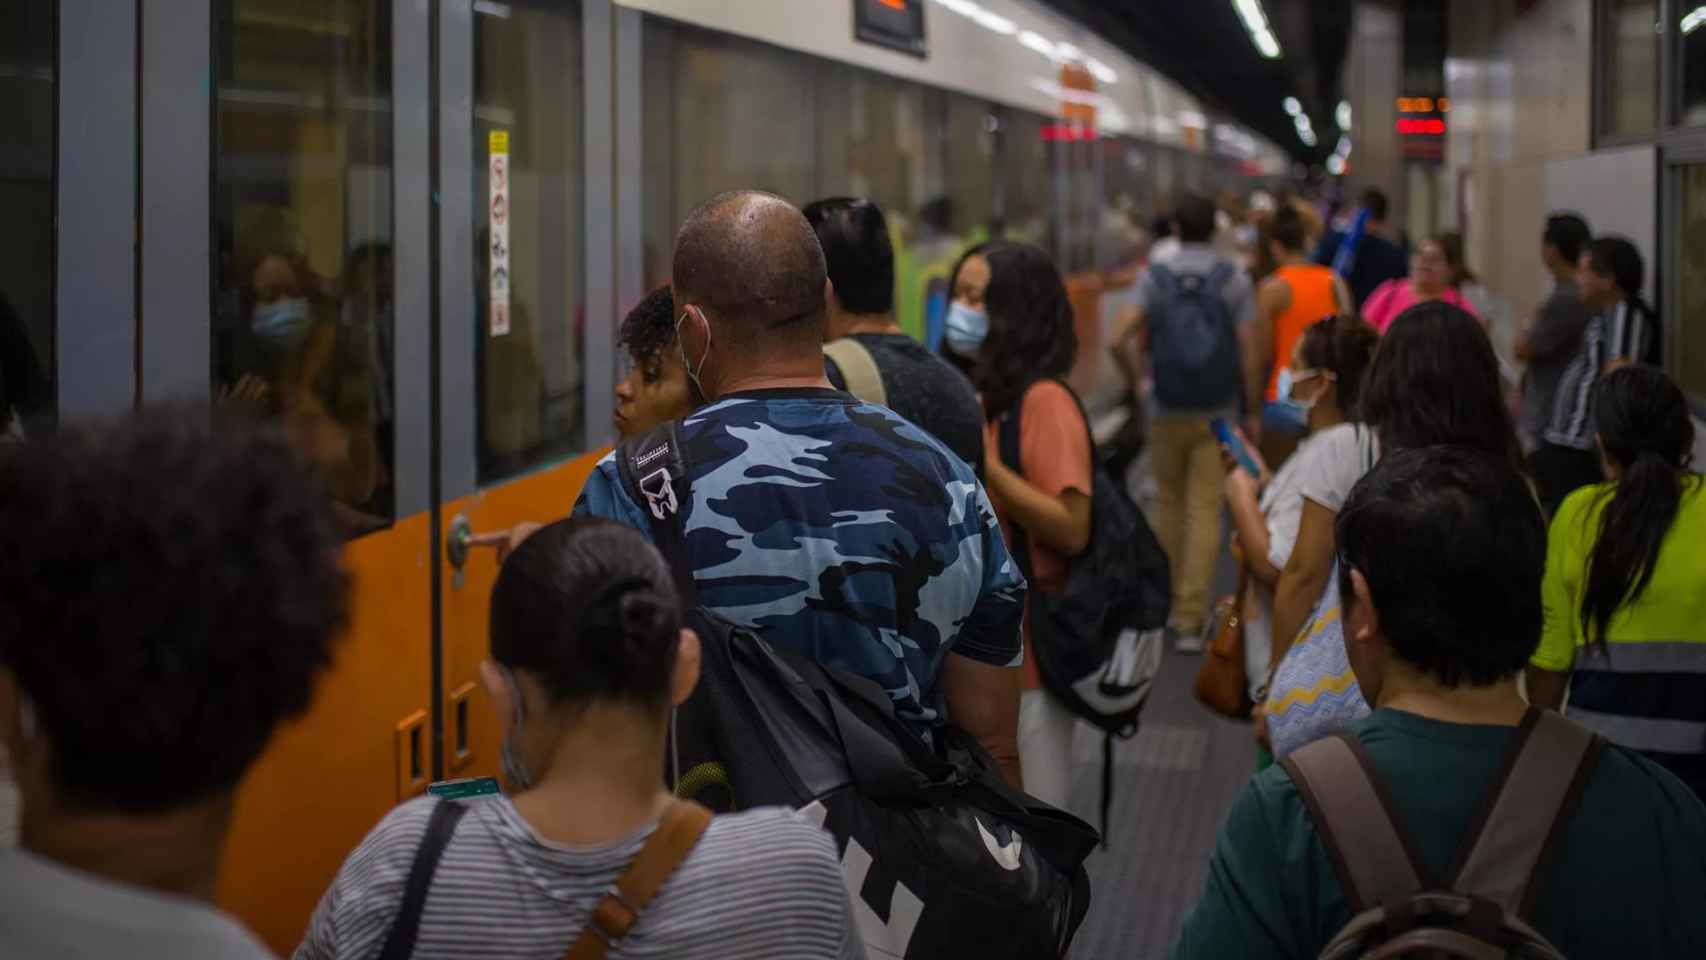 Viajeros suben a un tren en uno de los andenes de la estación de Sants de Barcelona